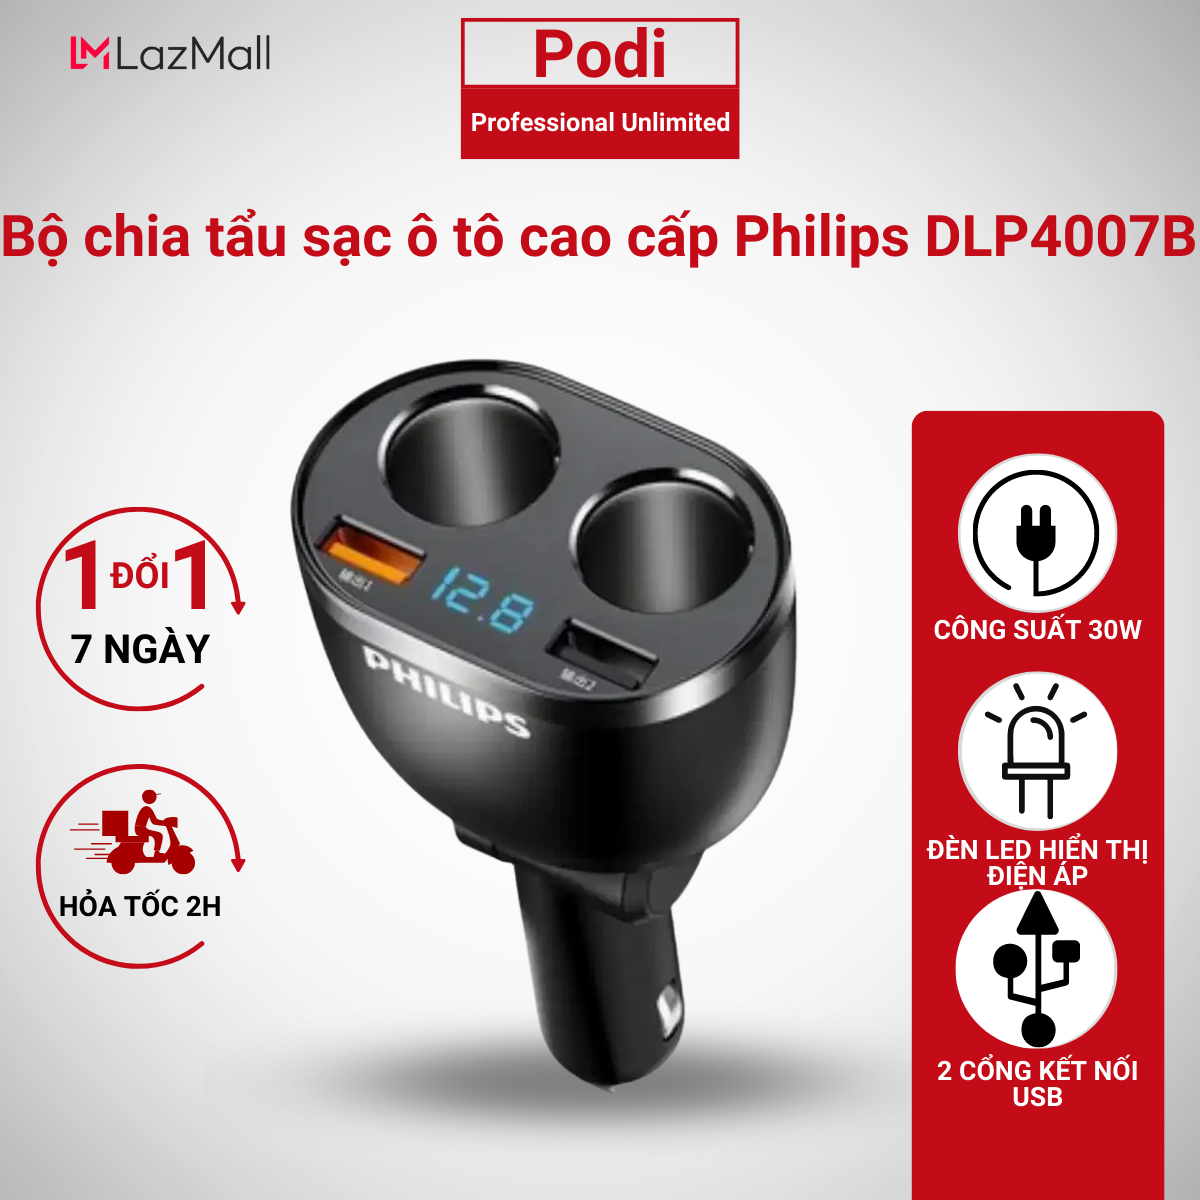 Bộ chia tẩu sạc Philips trên ô tô tích hợp 2 cổng kết nối USB có sạc nhanh DLP4007 – BH 2 năm